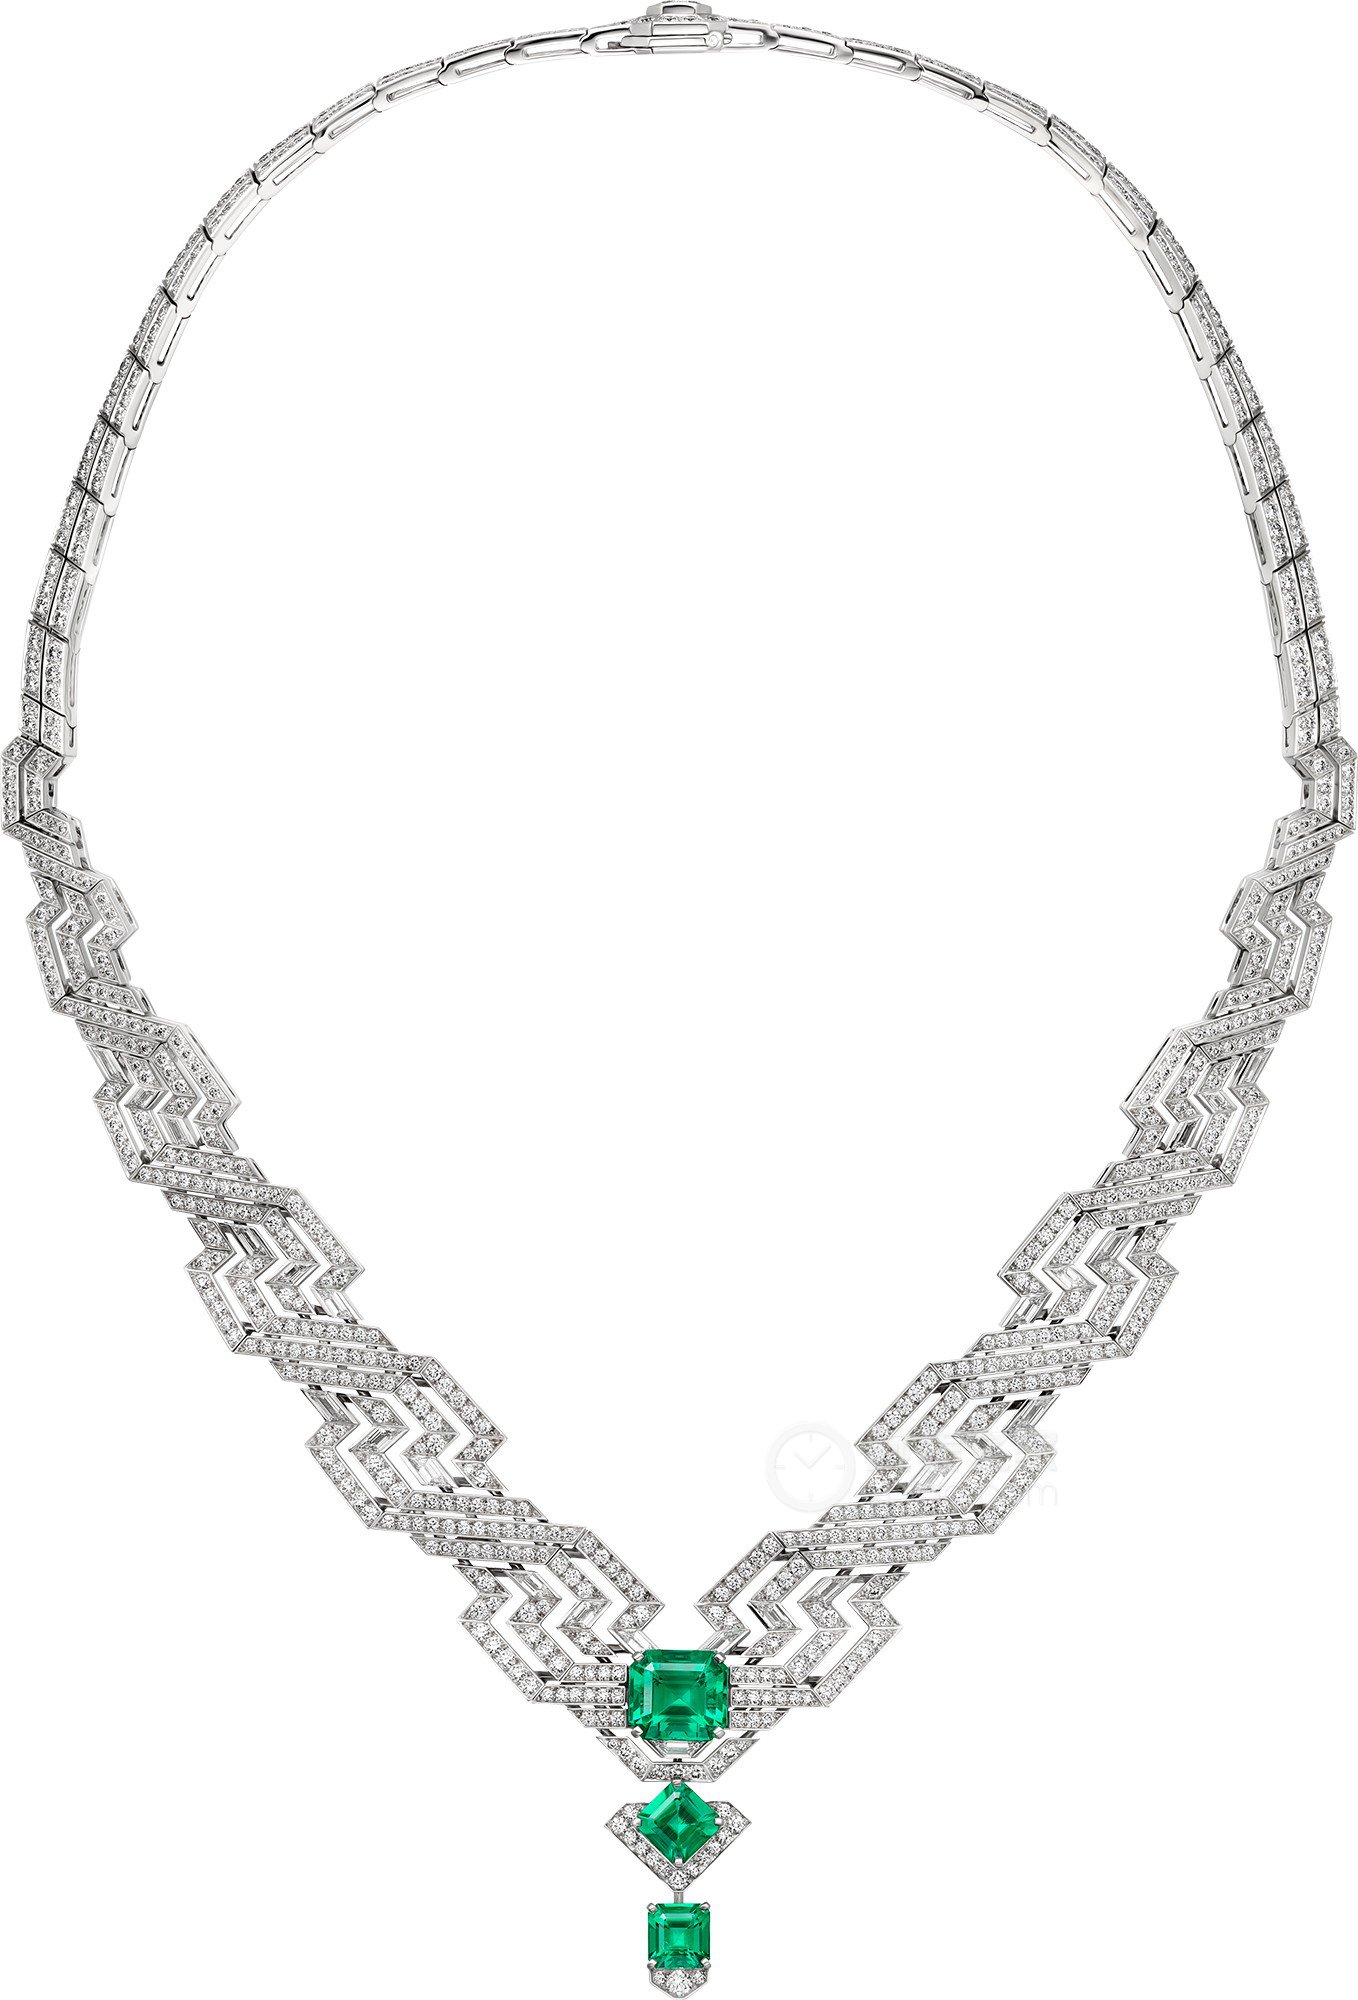 卡地亚LE VOYAGE RECOMMENCÉ高级珠宝系列LERRO高级珠宝项链项链